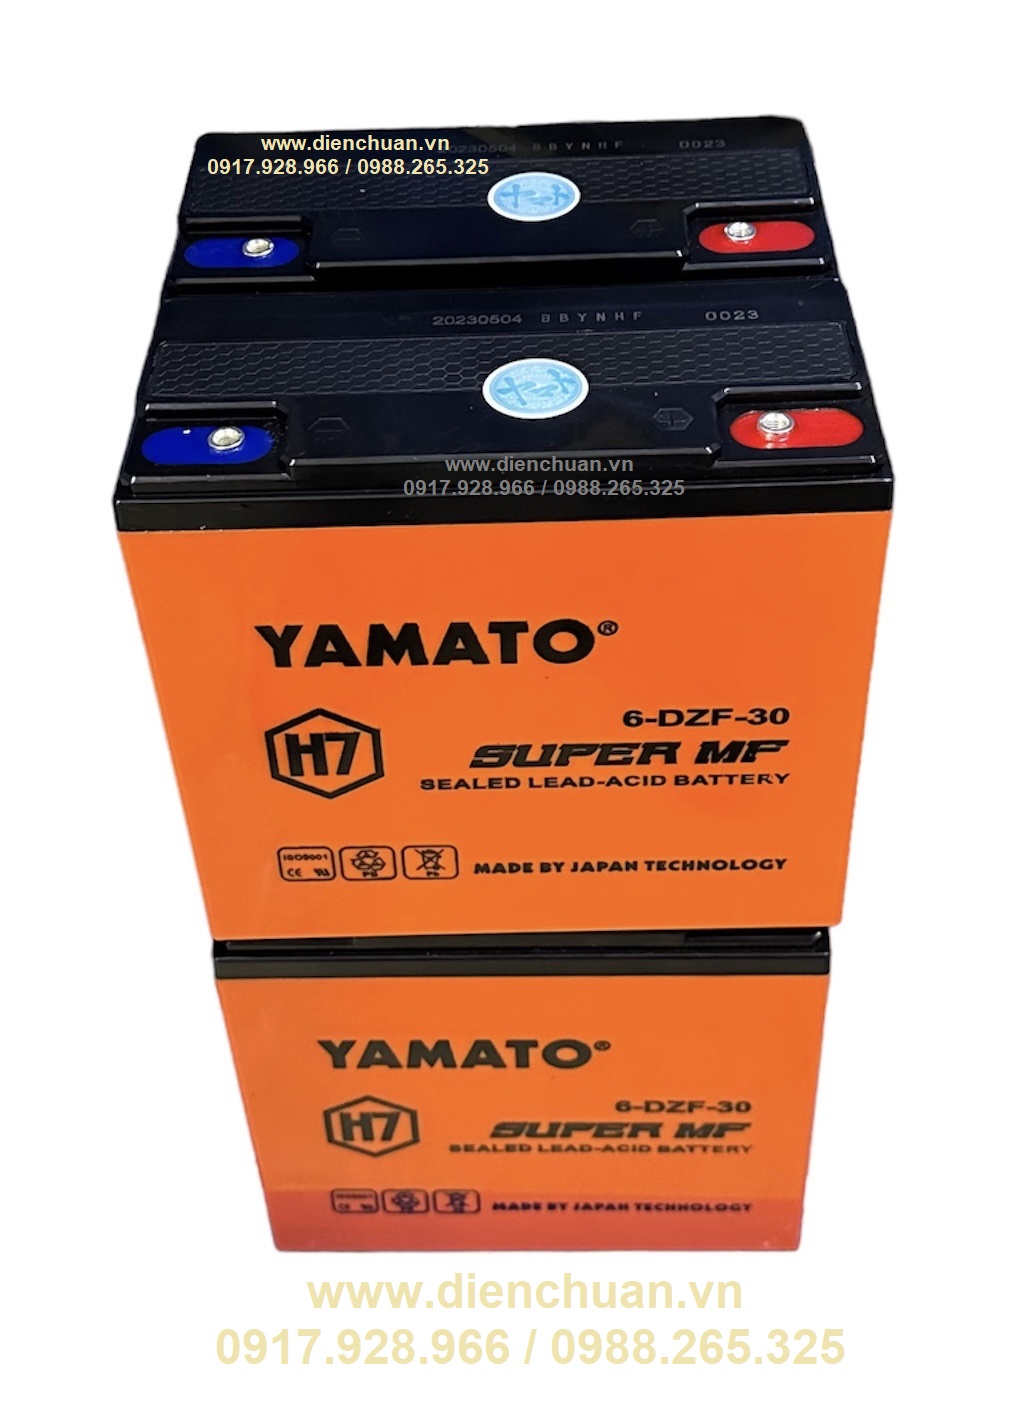 Bộ 4 bình ắc quy xe máy điện 48V 30Ah YAMATO H7 6-DZF-30 ( màu vàng cam 4 bình/28.4kg)